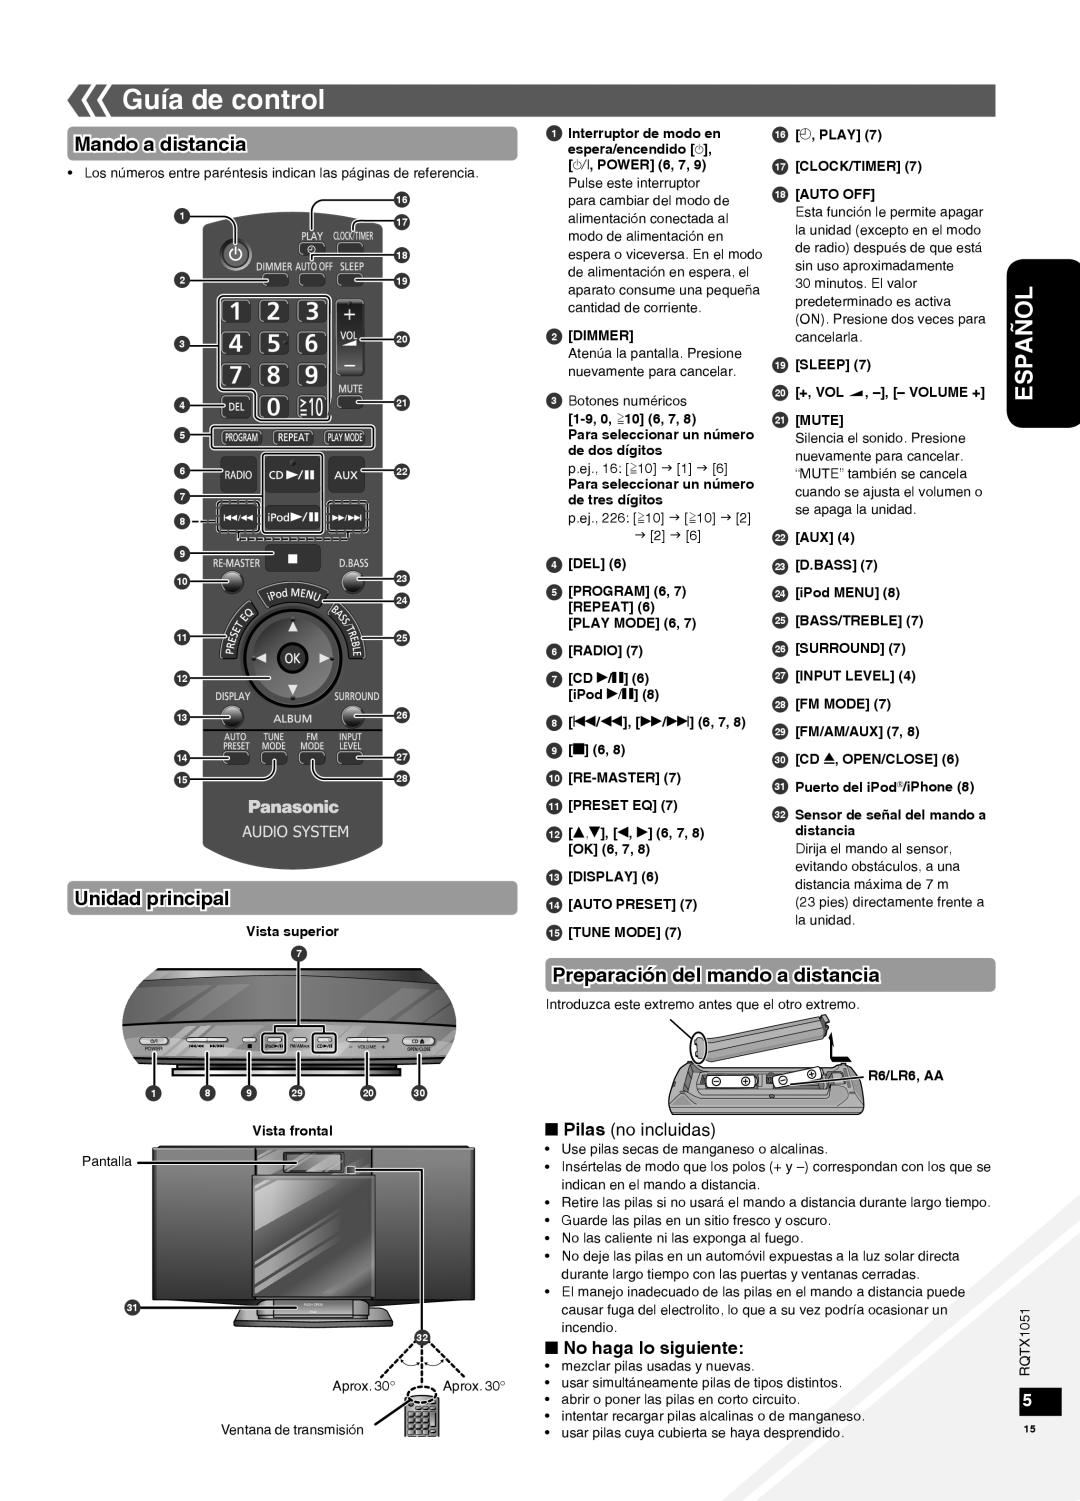 Panasonic SC-HC20 warranty Guía de control, Mando a distancia, Unidad principal, Preparación del mando a distancia, Español 